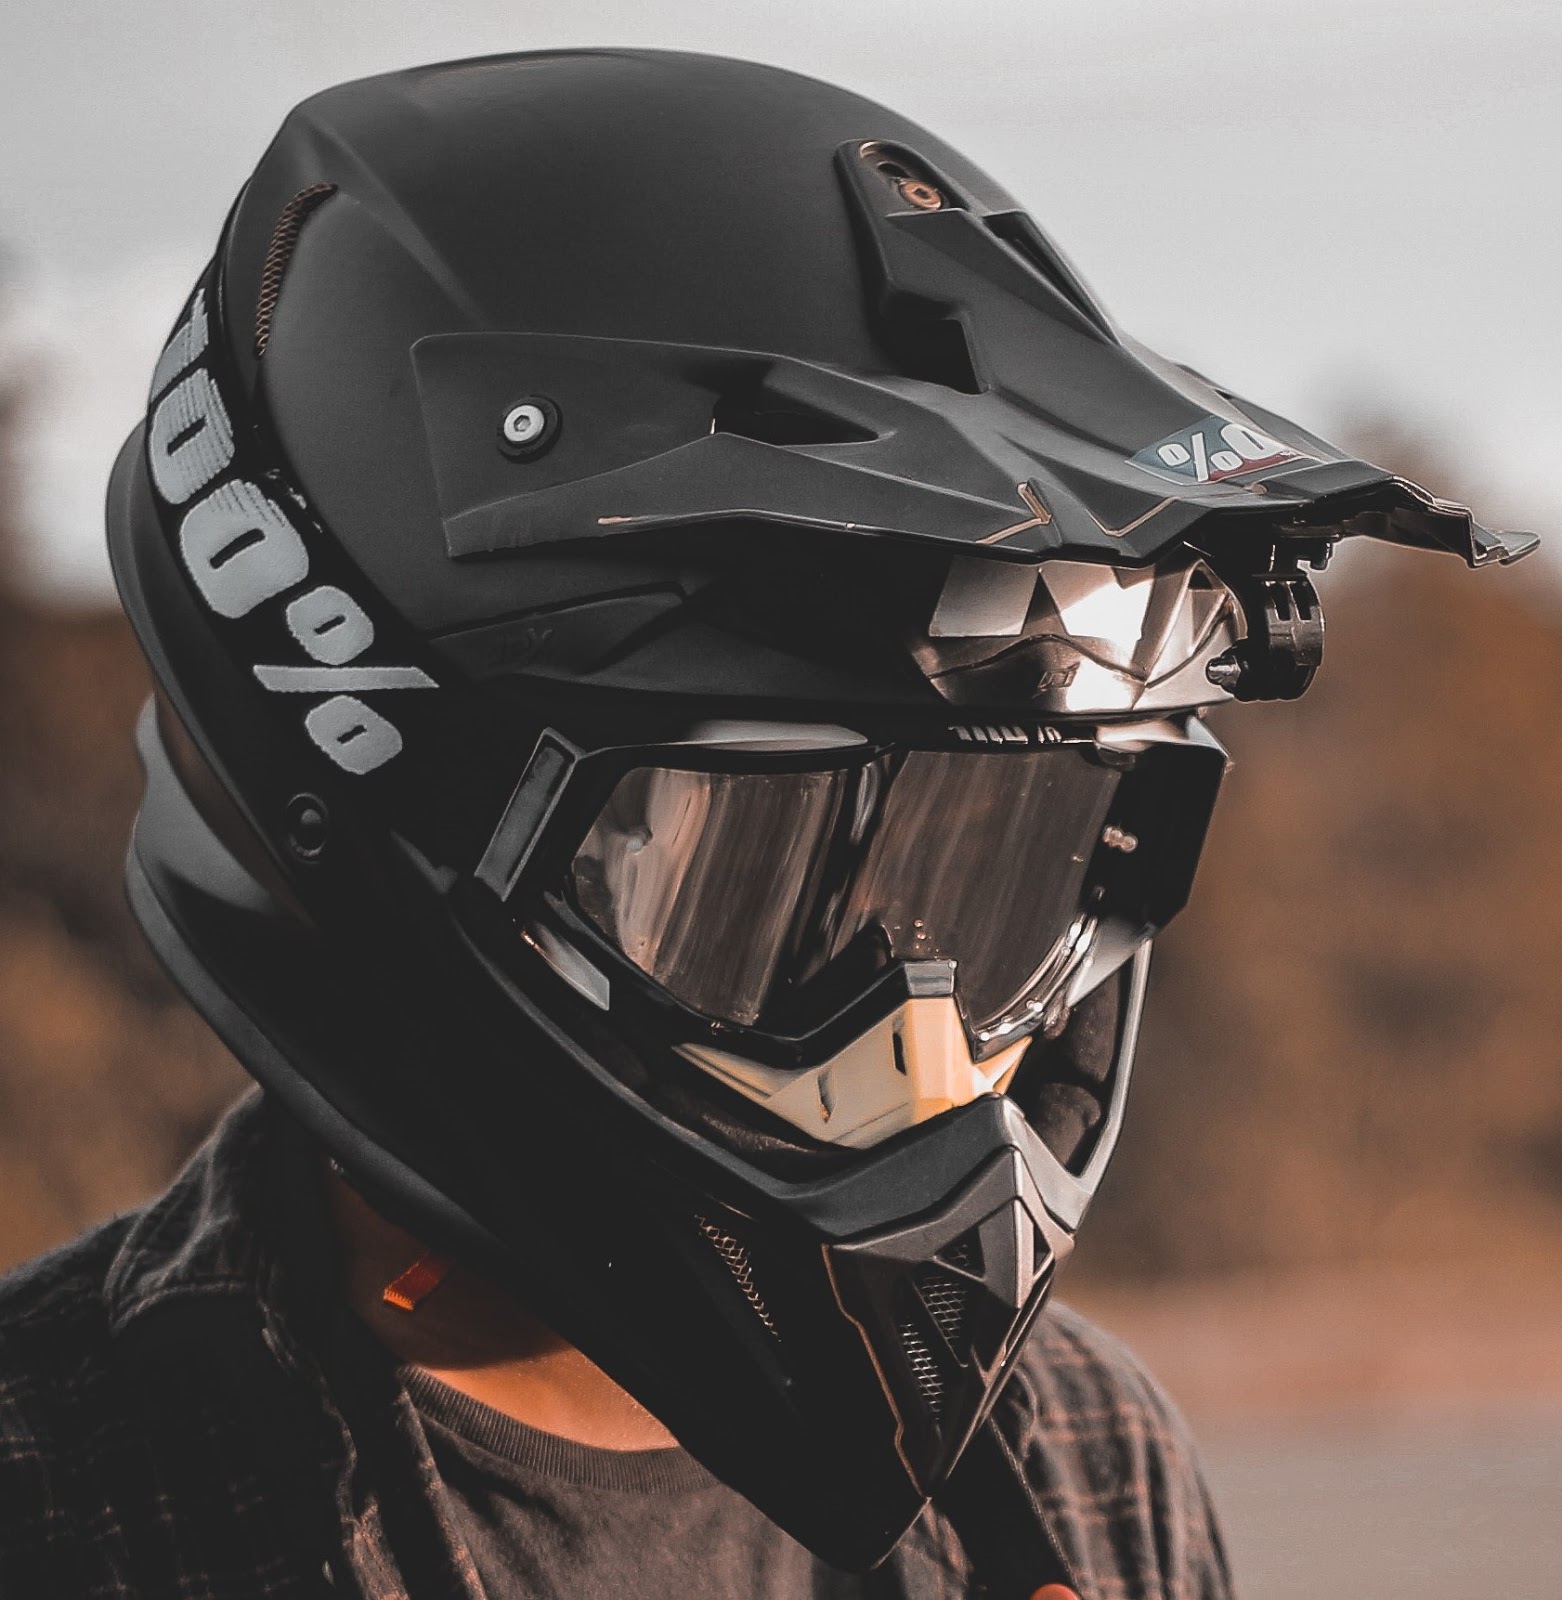 Motosiklet kask seçimi nasıl olmalı ? Kask nasıl seçilir